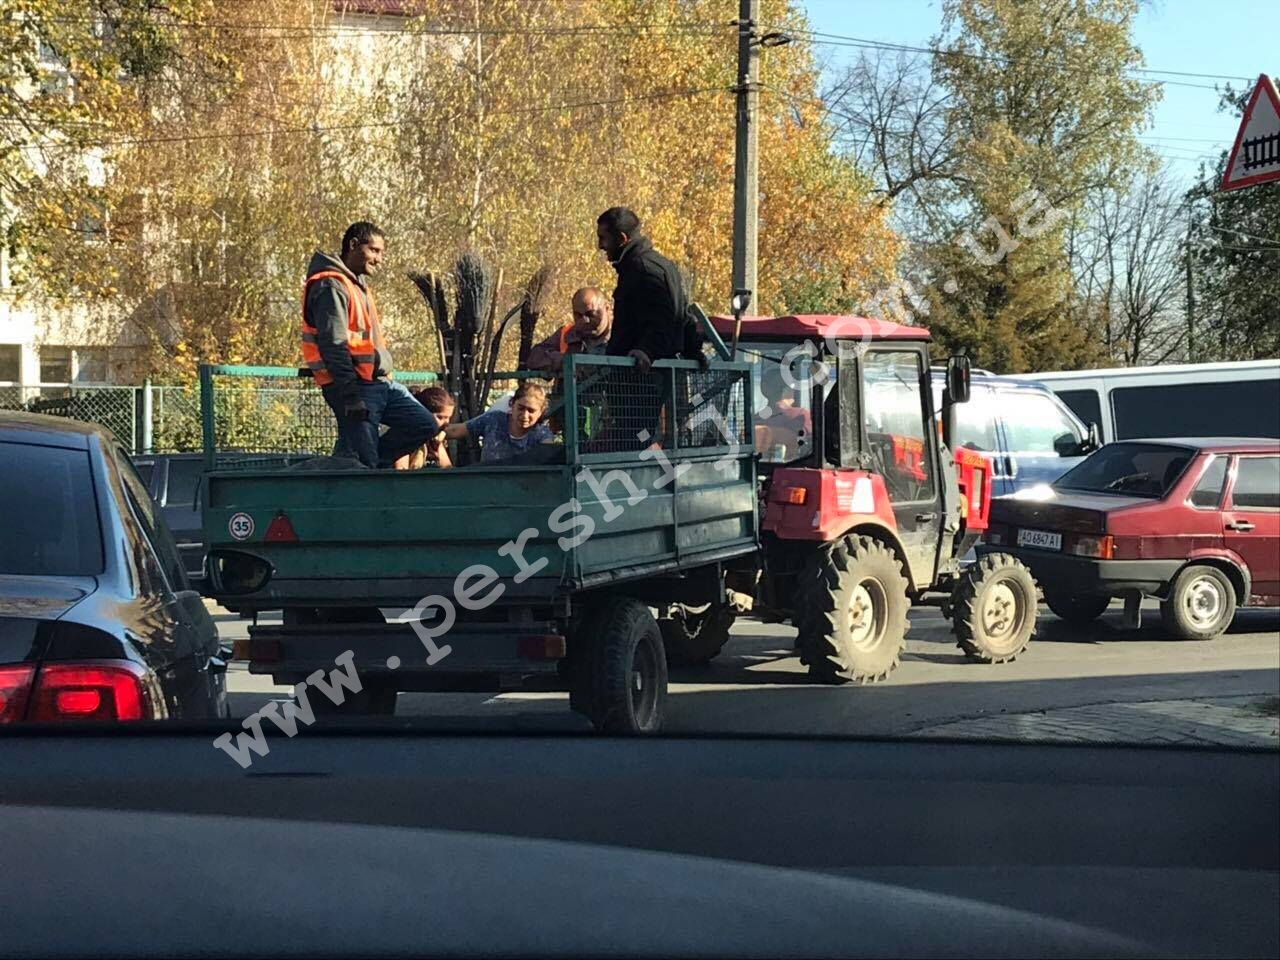 З вітерцем на тракторі: як у Мукачеві працюють комунальники (ФОТО)